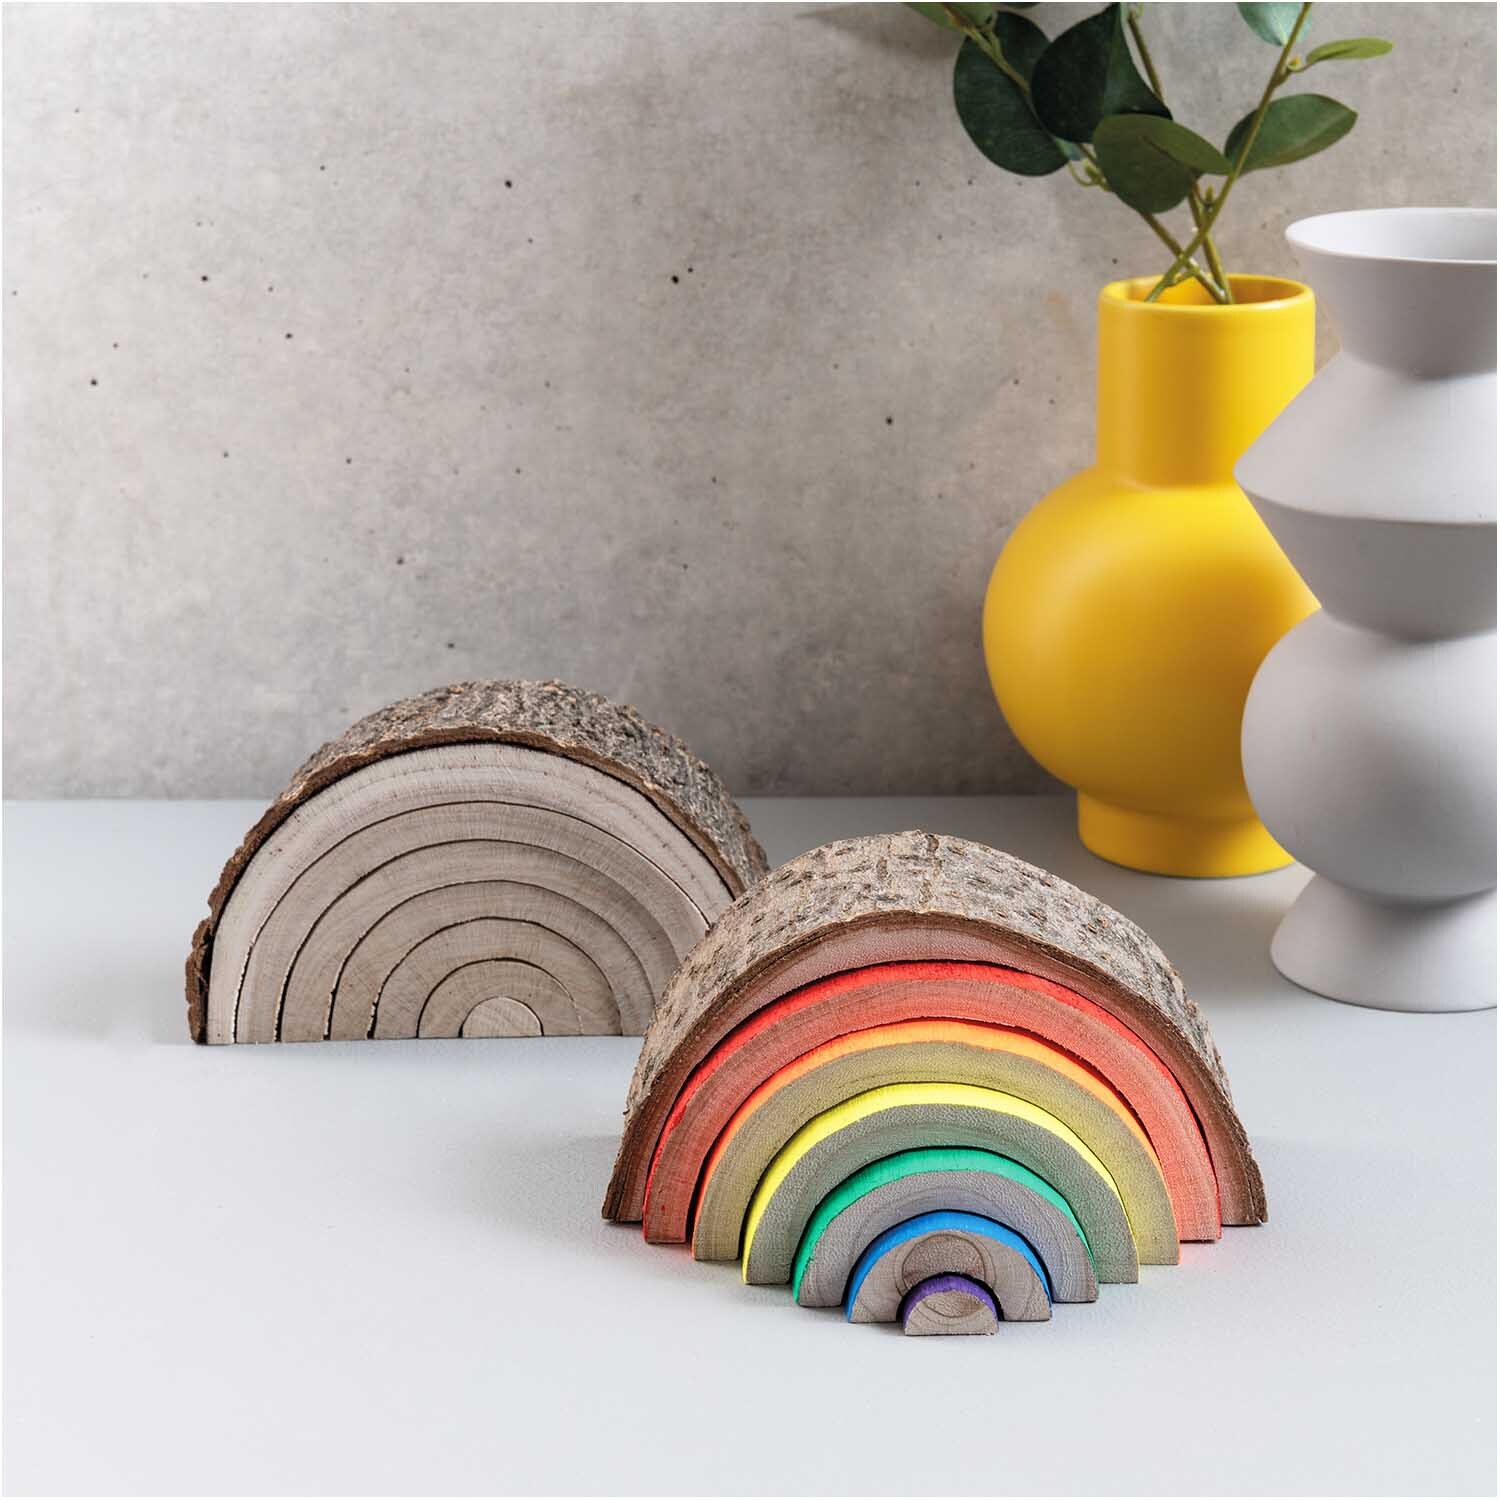 Holz-Regenbogen mit Rinde 14x8x5cm 7teilig